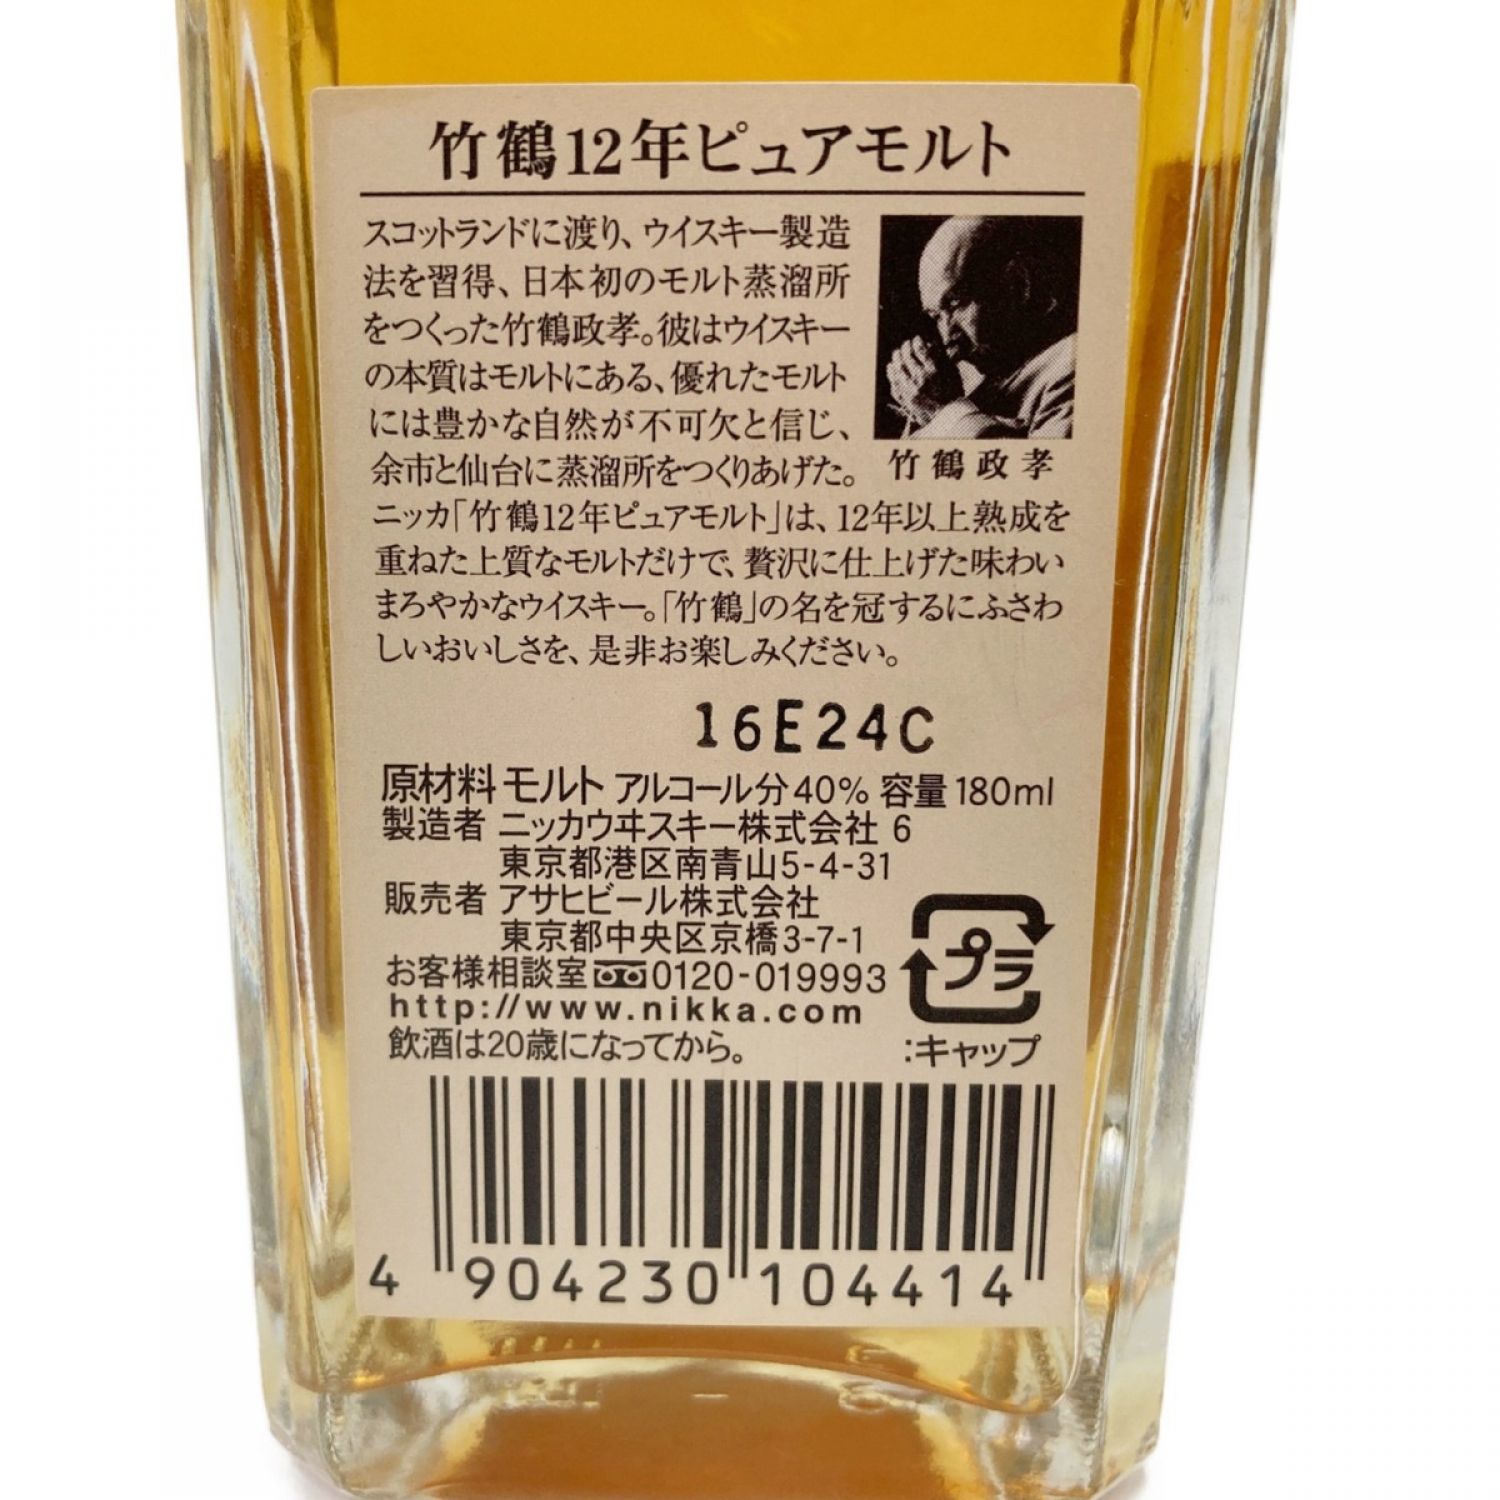 Nikka 竹鶴 12年ピュアモルト ウイスキー 40度 700ml